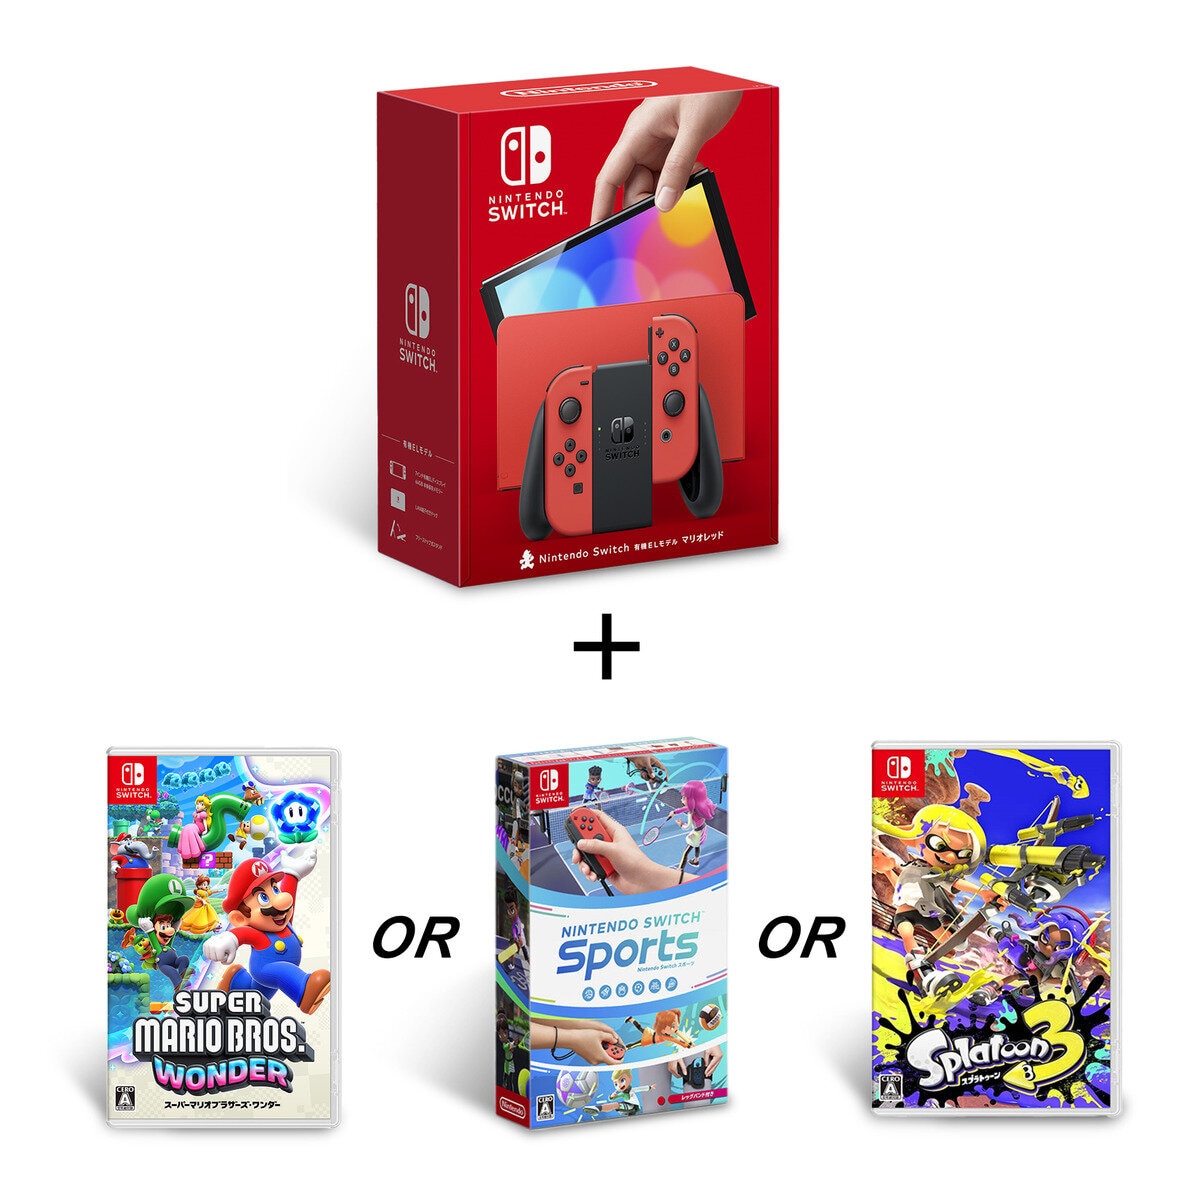 Nintendo Switch（有機ELモデル) + 選べるソフトセット